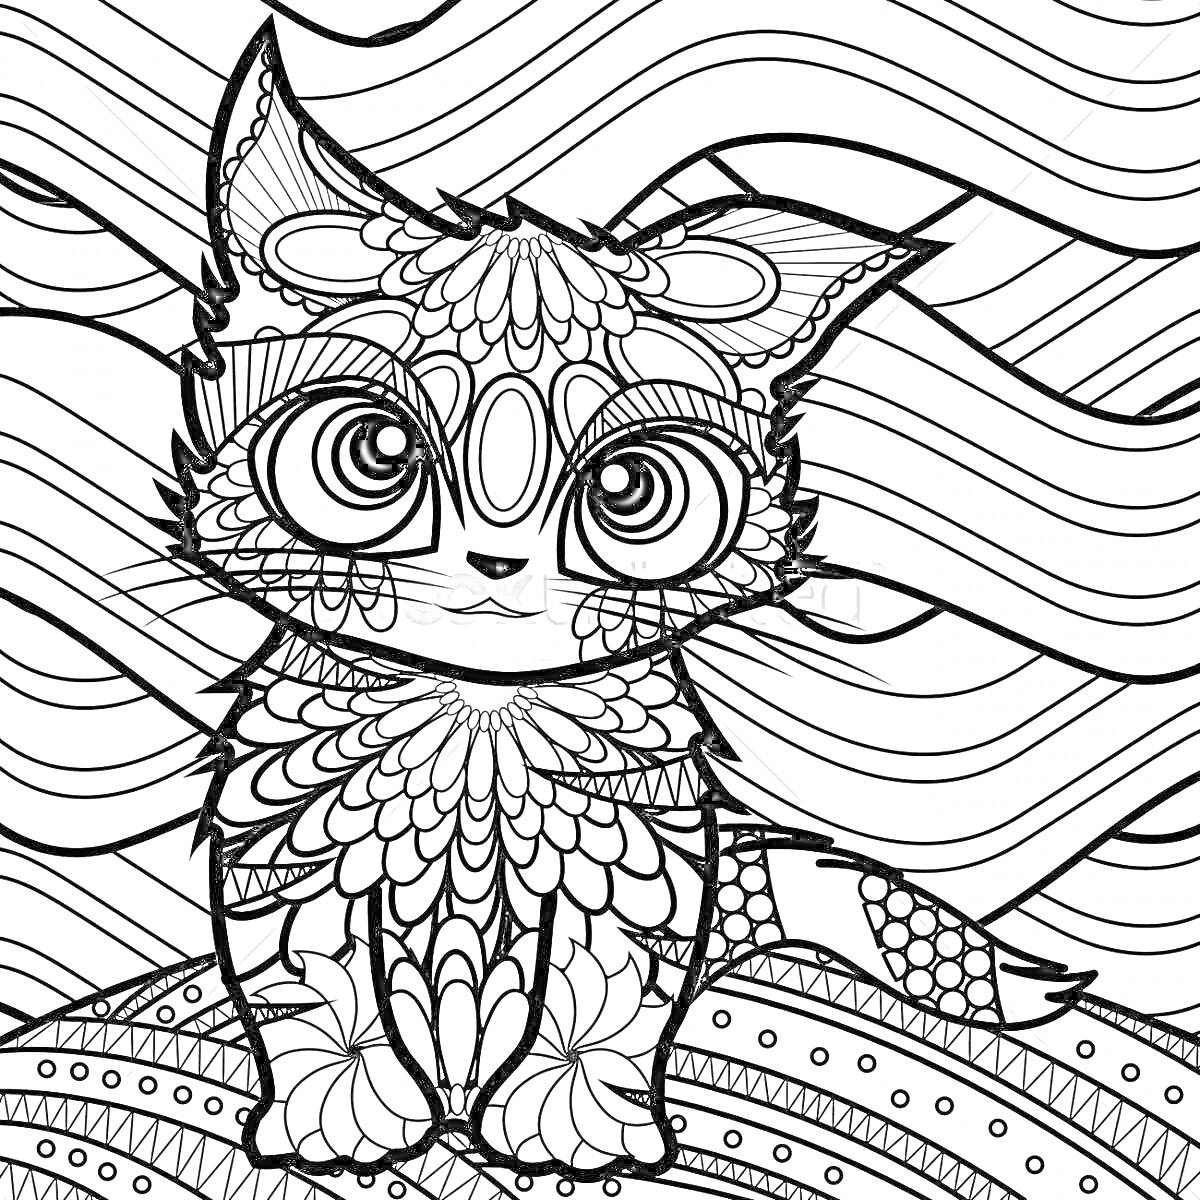 Раскраска Арт кот на узорчатом фоне с волнами и декоративными элементами